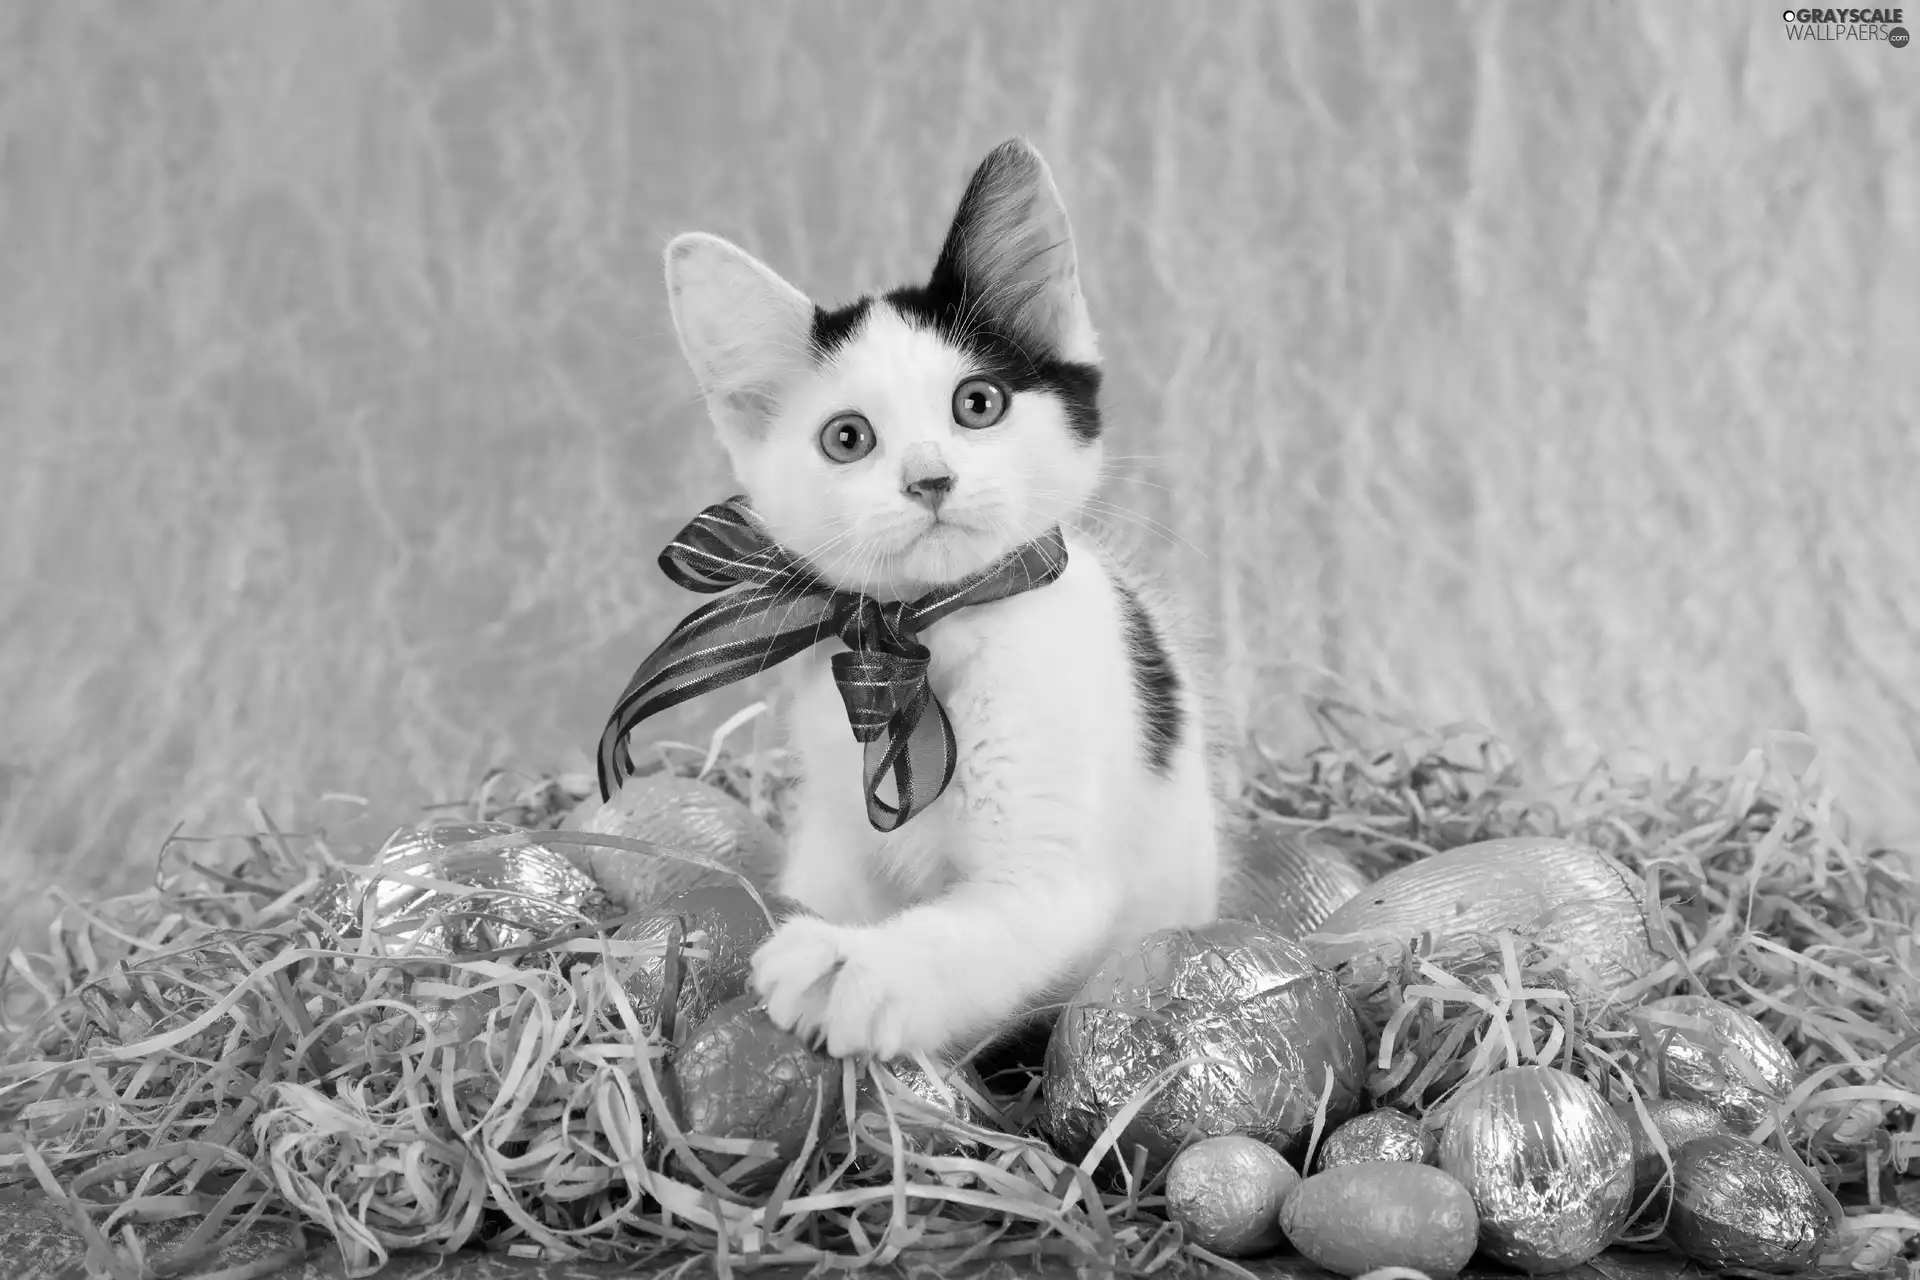 eggs, Easter, cat